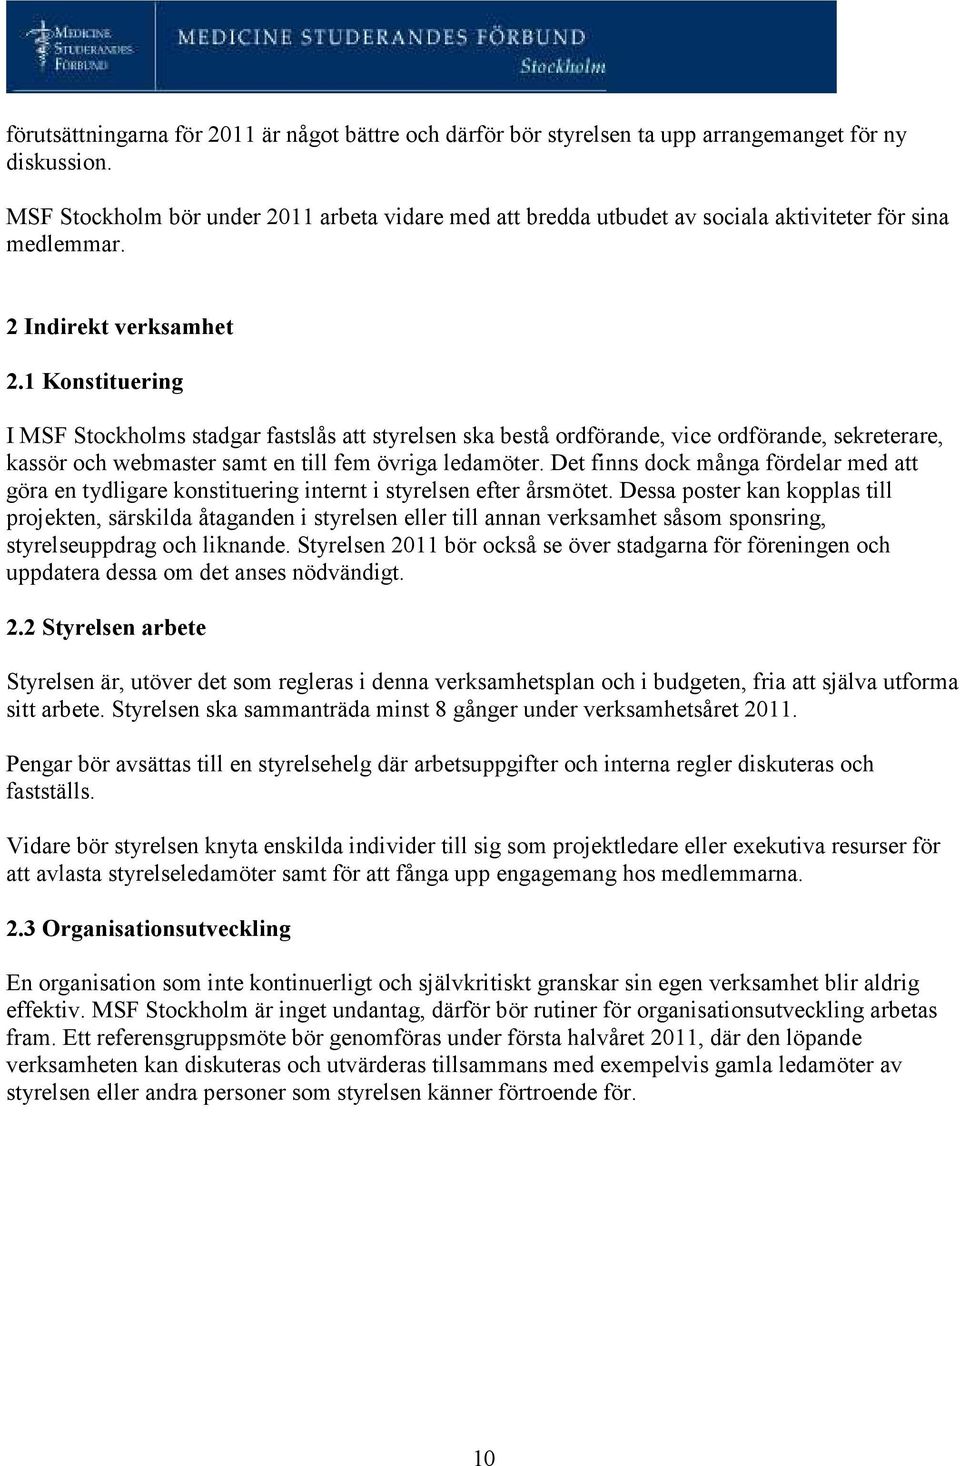 1 Konstituering I MSF Stockholms stadgar fastslås att styrelsen ska bestå ordförande, vice ordförande, sekreterare, kassör och webmaster samt en till fem övriga ledamöter.